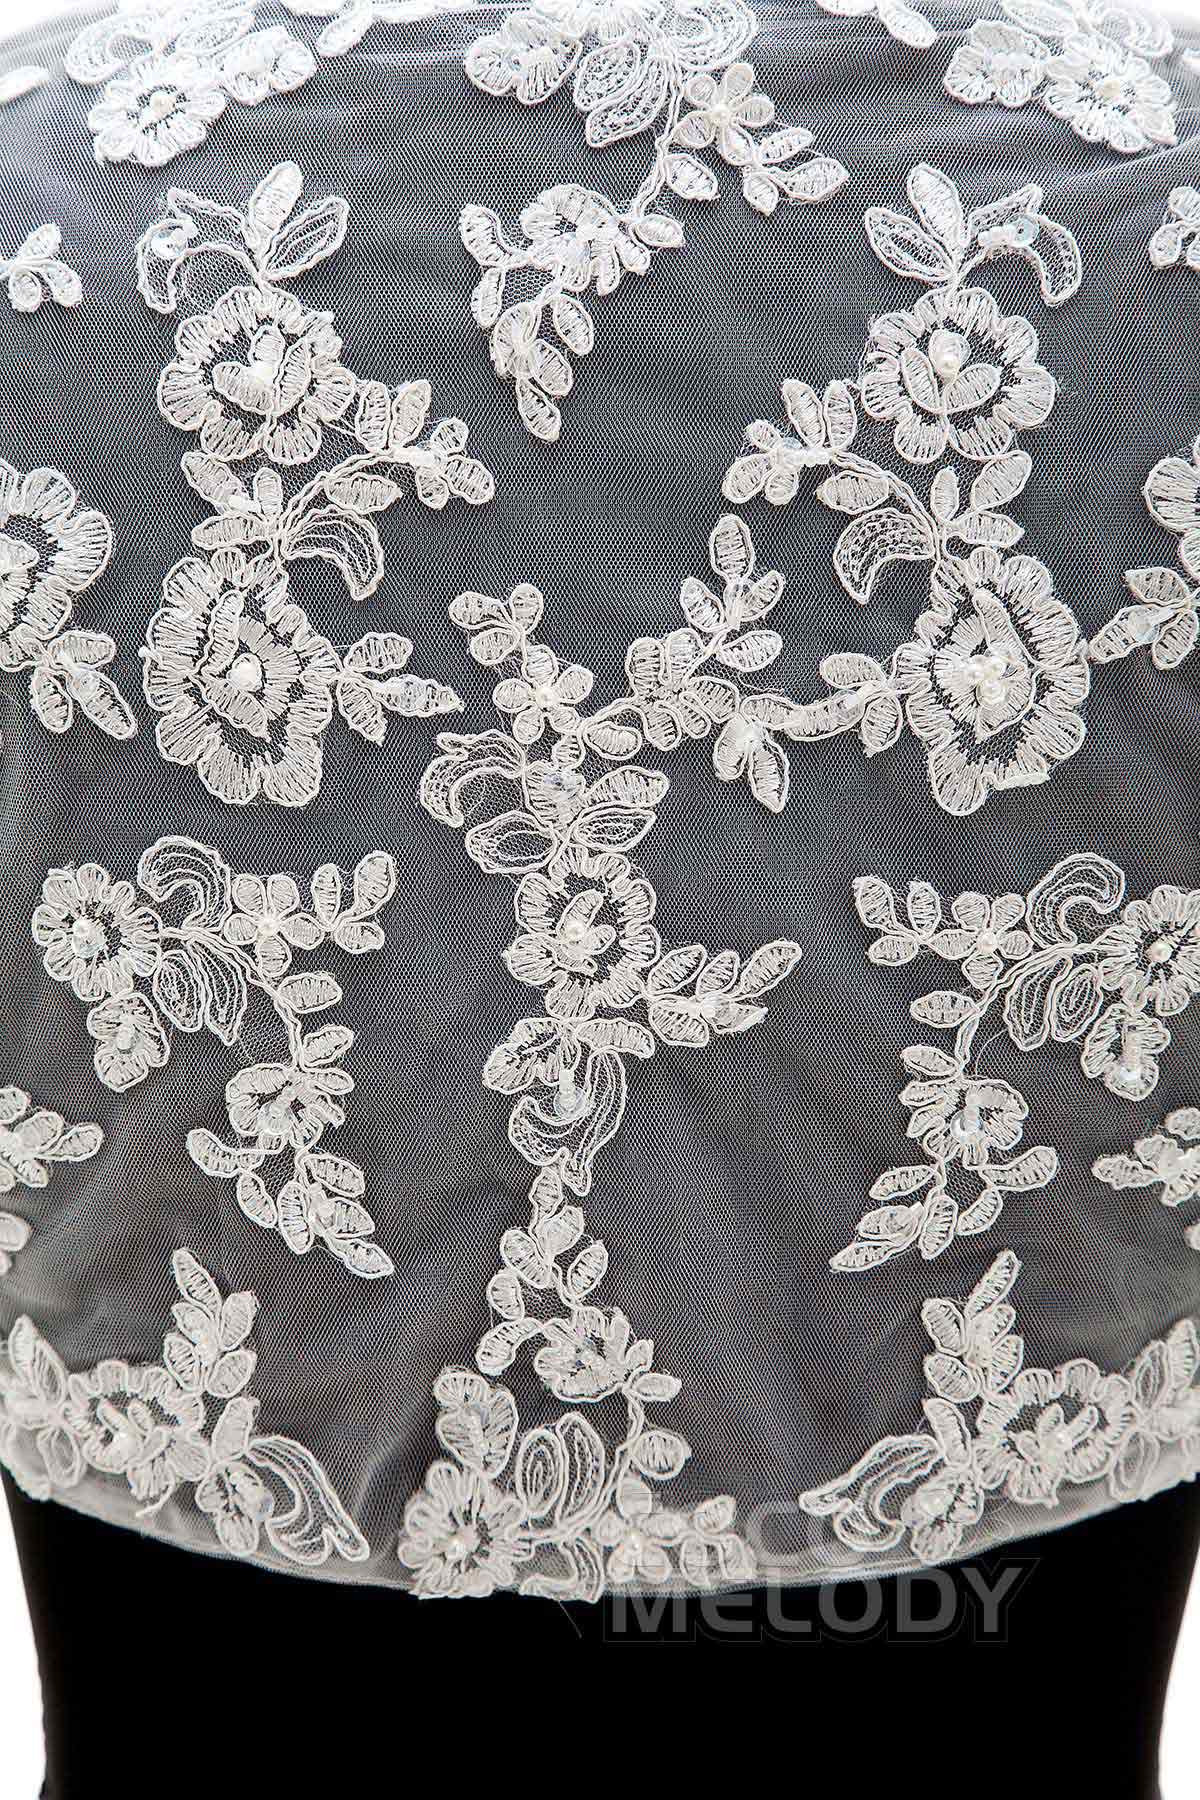 Lace 3/4 Length Sleeve Wedding Jacket AC6016